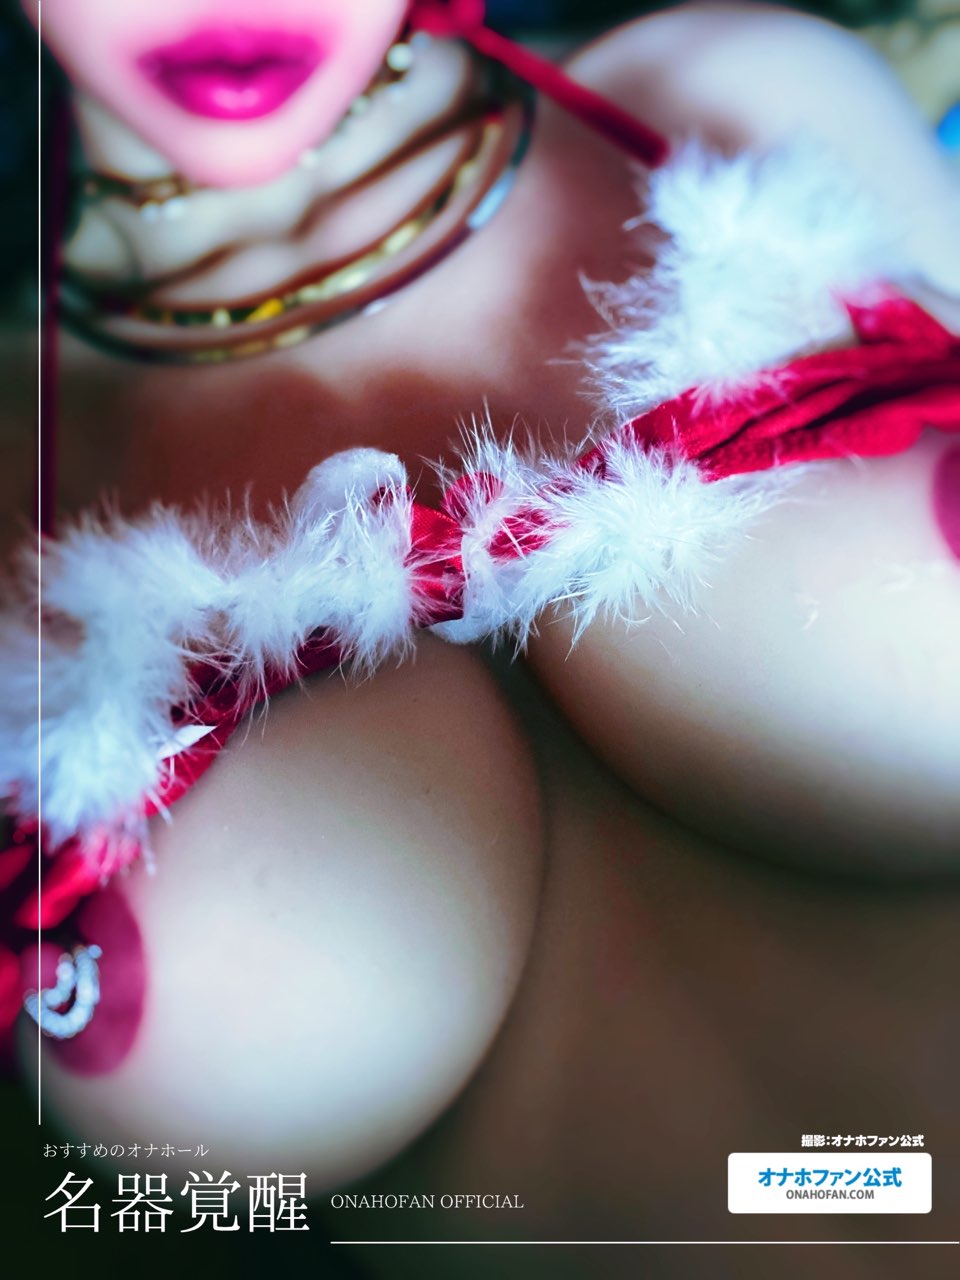 クリスマスコスでハンドオナホの『名器覚醒』をラブドールに装着して着衣セックスしてみた36